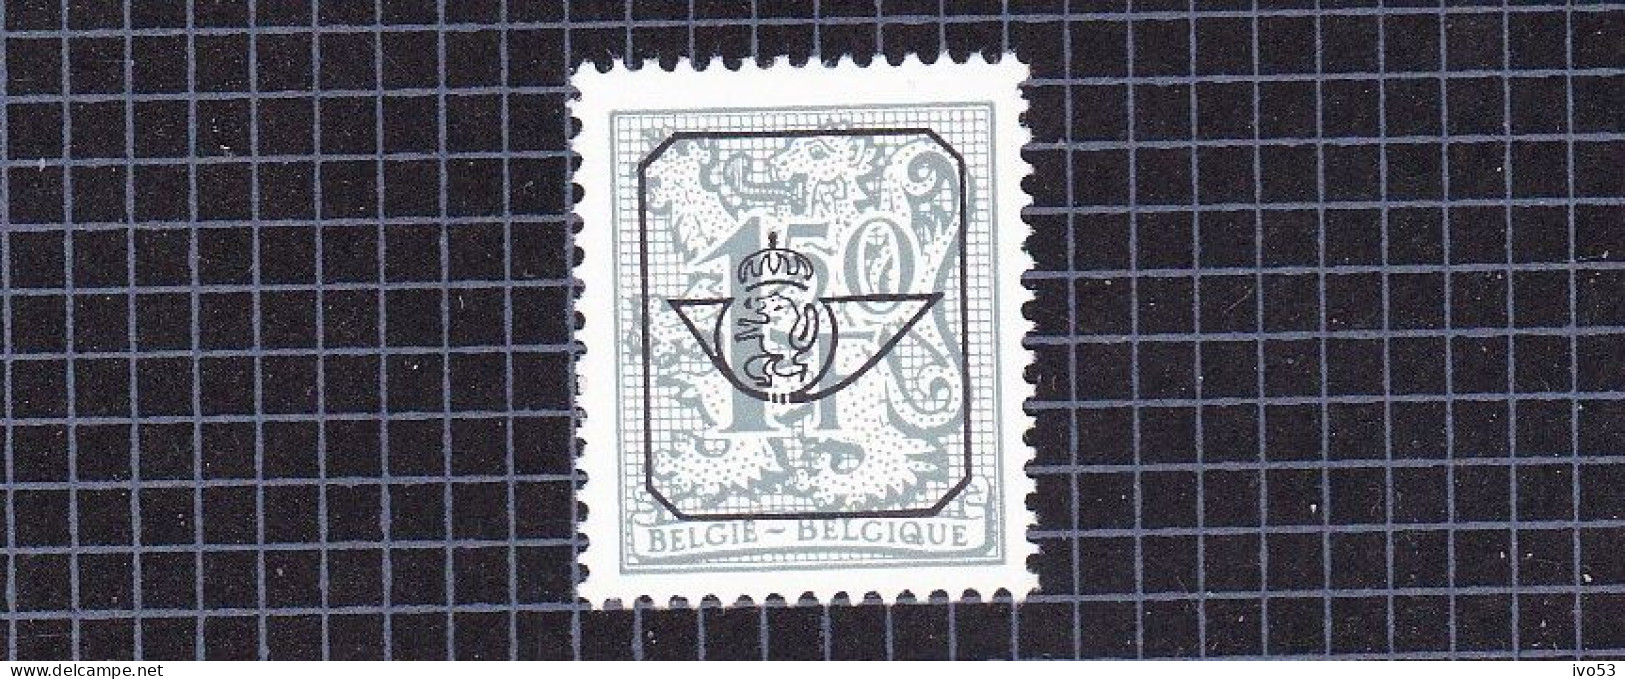 1980 Nr PRE801P4 ** Postfris,Heraldieke Leeuw.1,5fr. - Typografisch 1951-80 (Cijfer Op Leeuw)